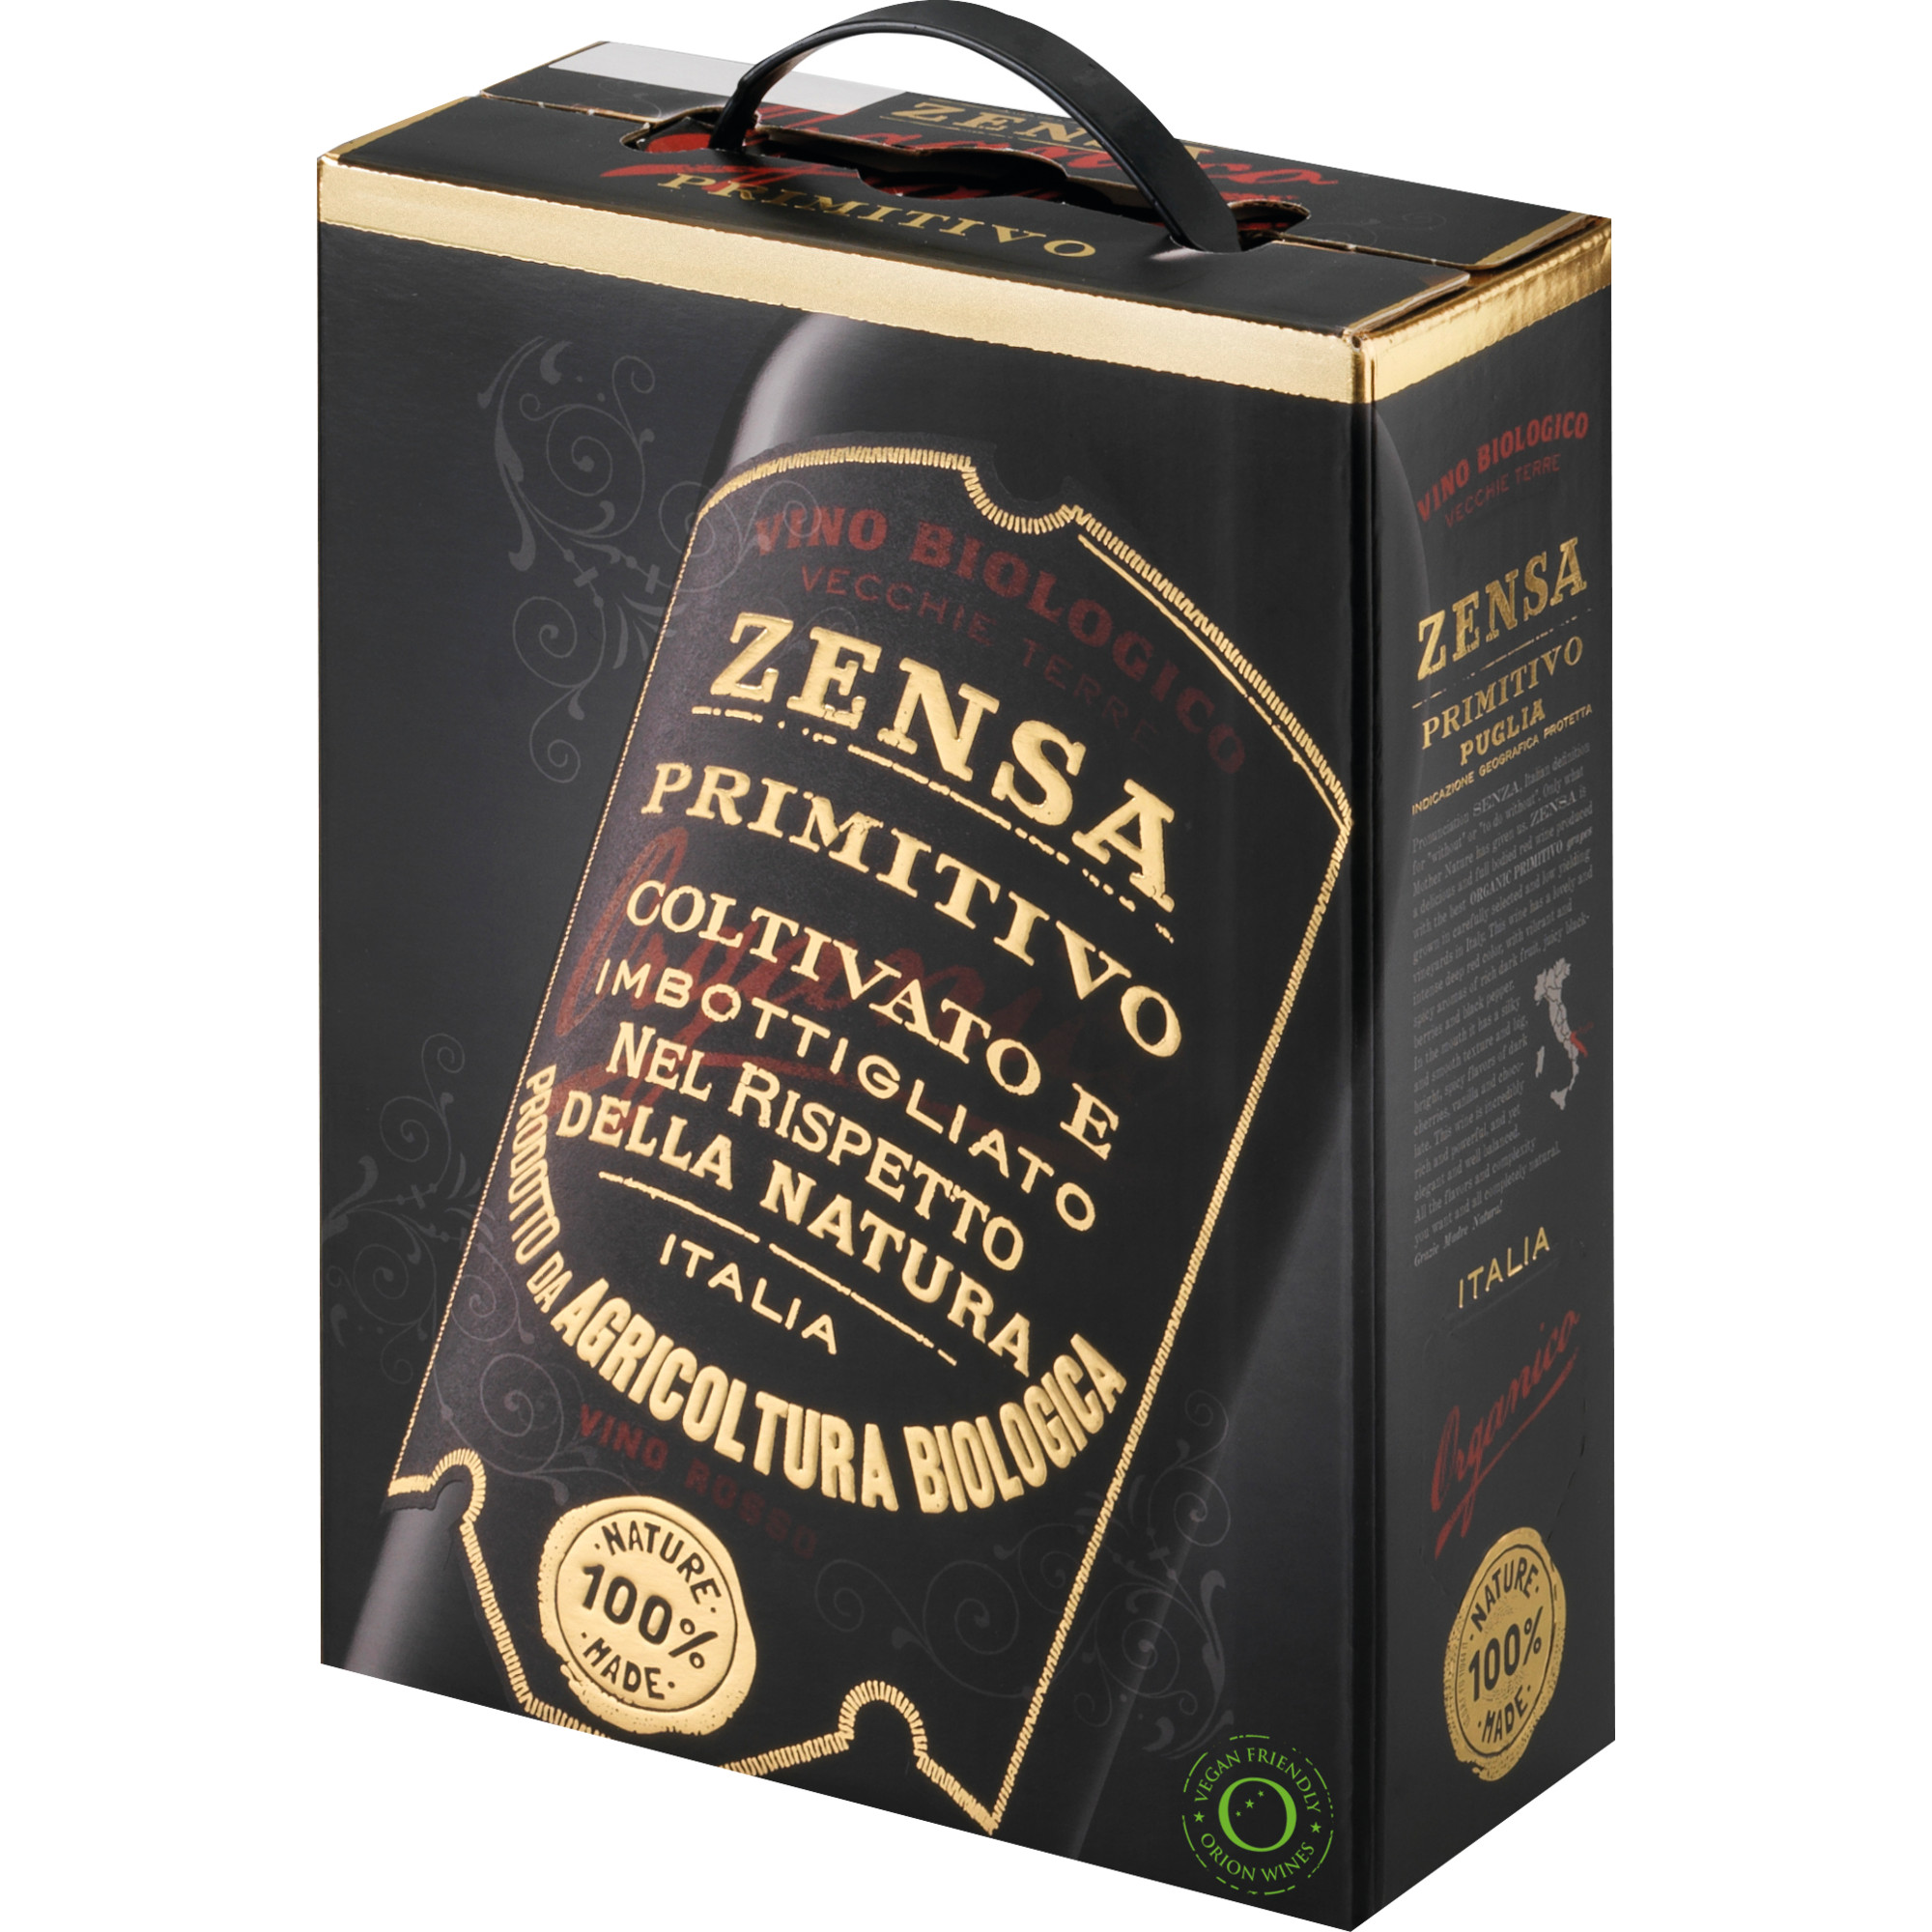 Zensa Primitivo, Puglia IGP, Bag in Box 3 L, Apulien, 2021, Rotwein  Rotwein Hawesko